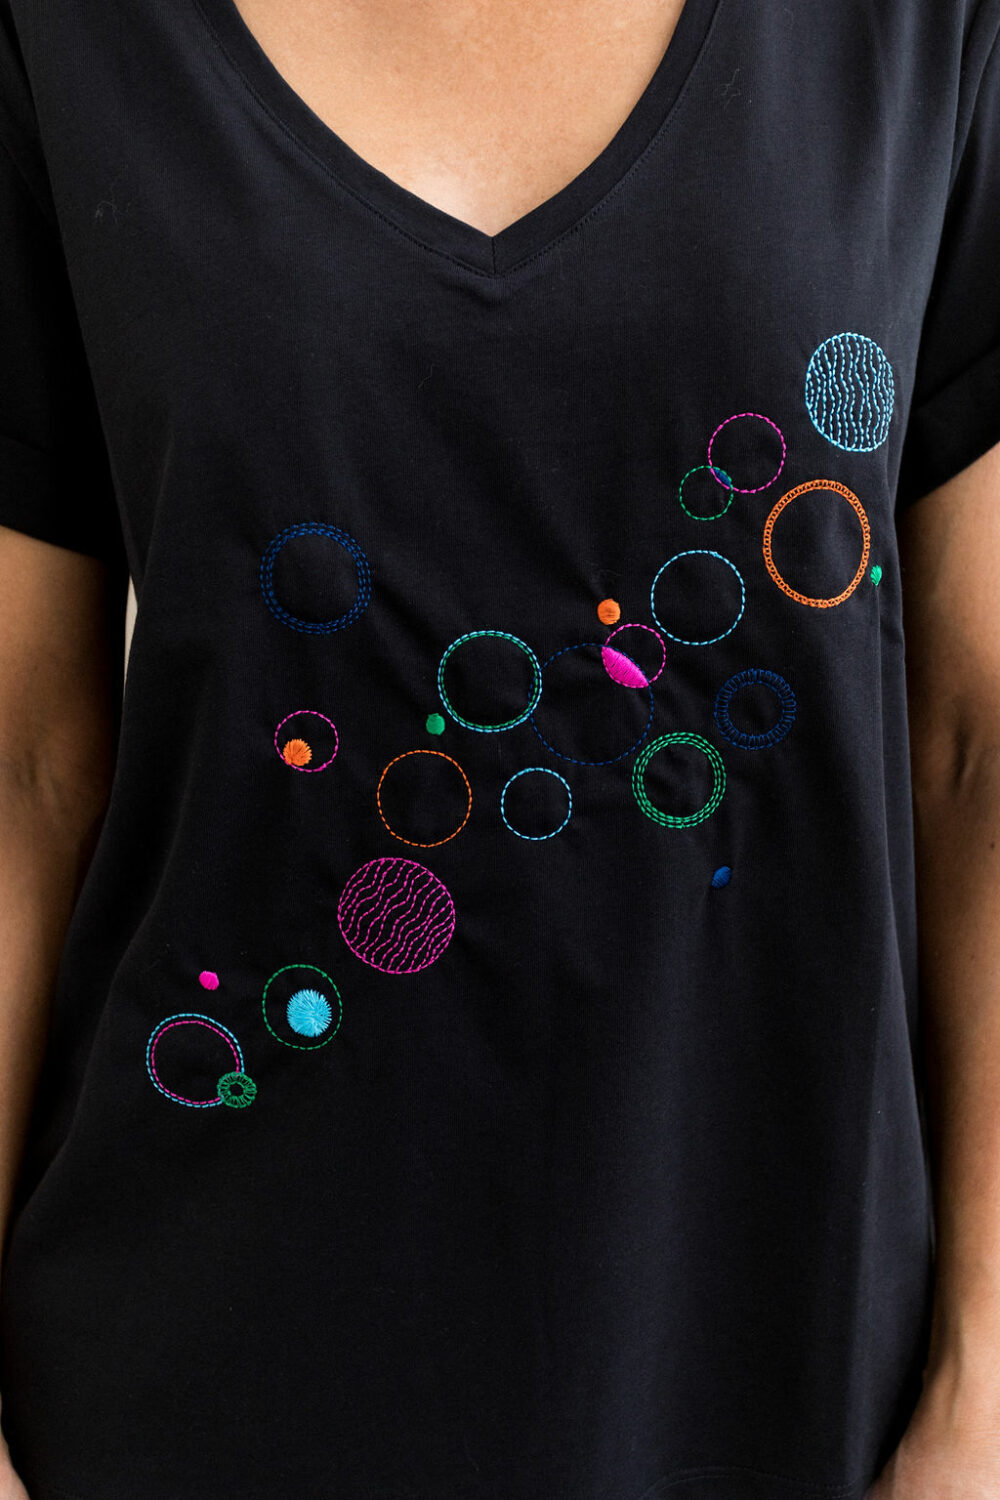 Tee-shirt brodé bulles graphiques 100% coton bio colori noir